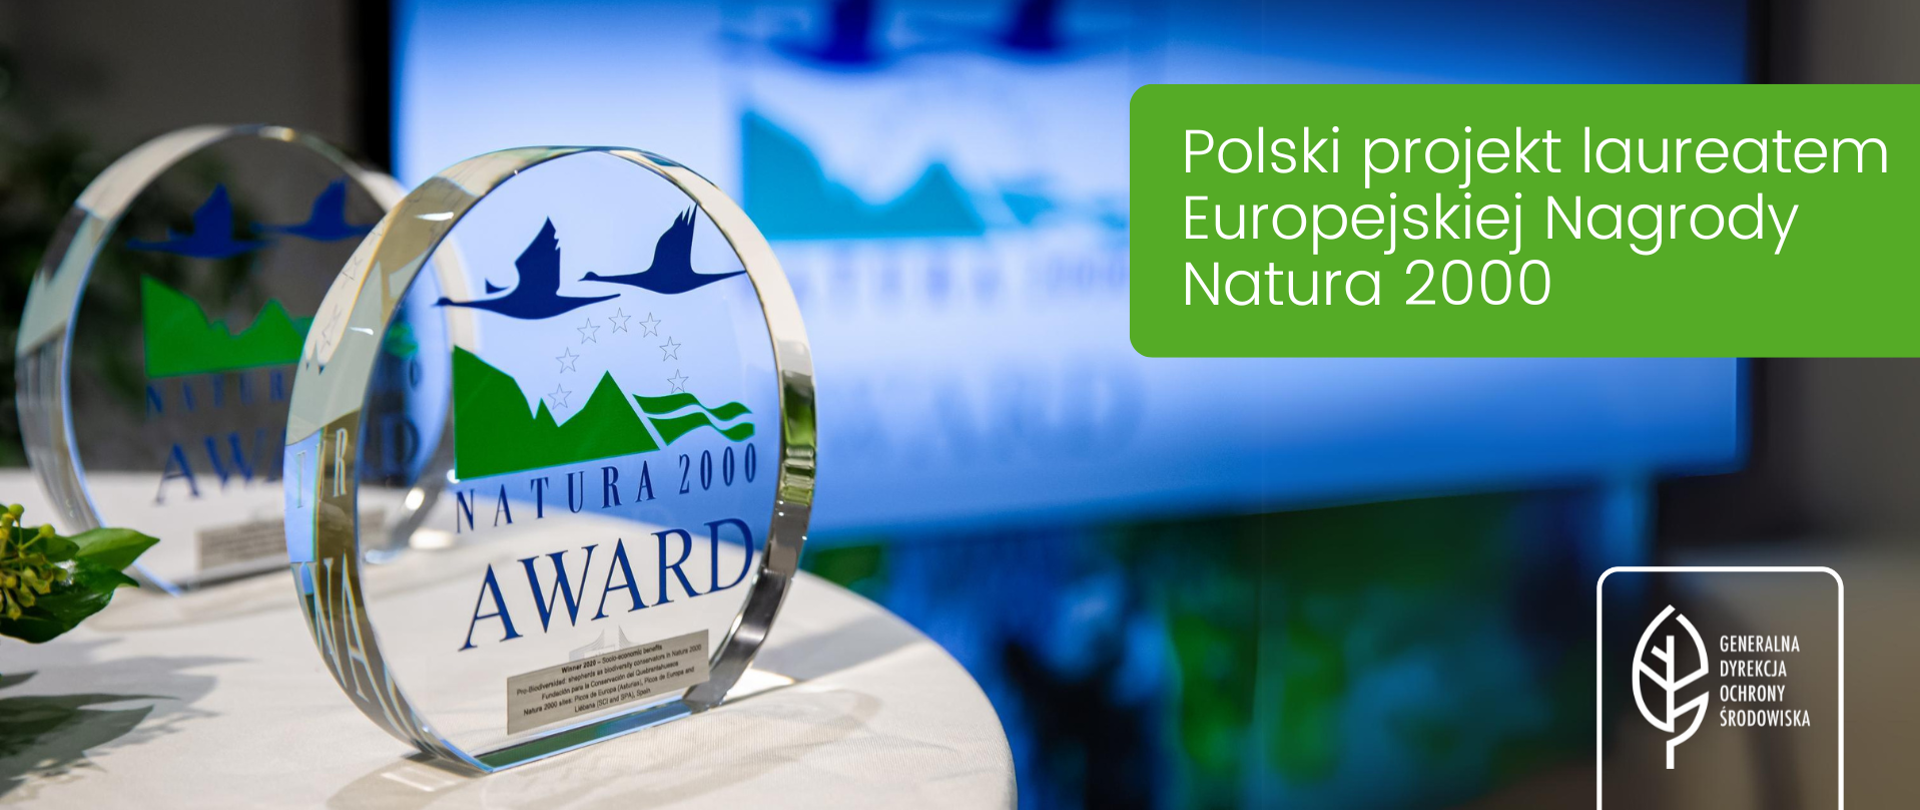 Na stole stoją dwie szklane statuetki z logotypem Nagrody Natura 2000 (Natura 2000 Award) . W prawym górnym rogu napis: Polski projekt laureatem Europejskiej Nagrody Natura 2000, w prawym dolny m rogu logotyp Generalnej Dyrekcji Ochrony Środowiska (biały liść)